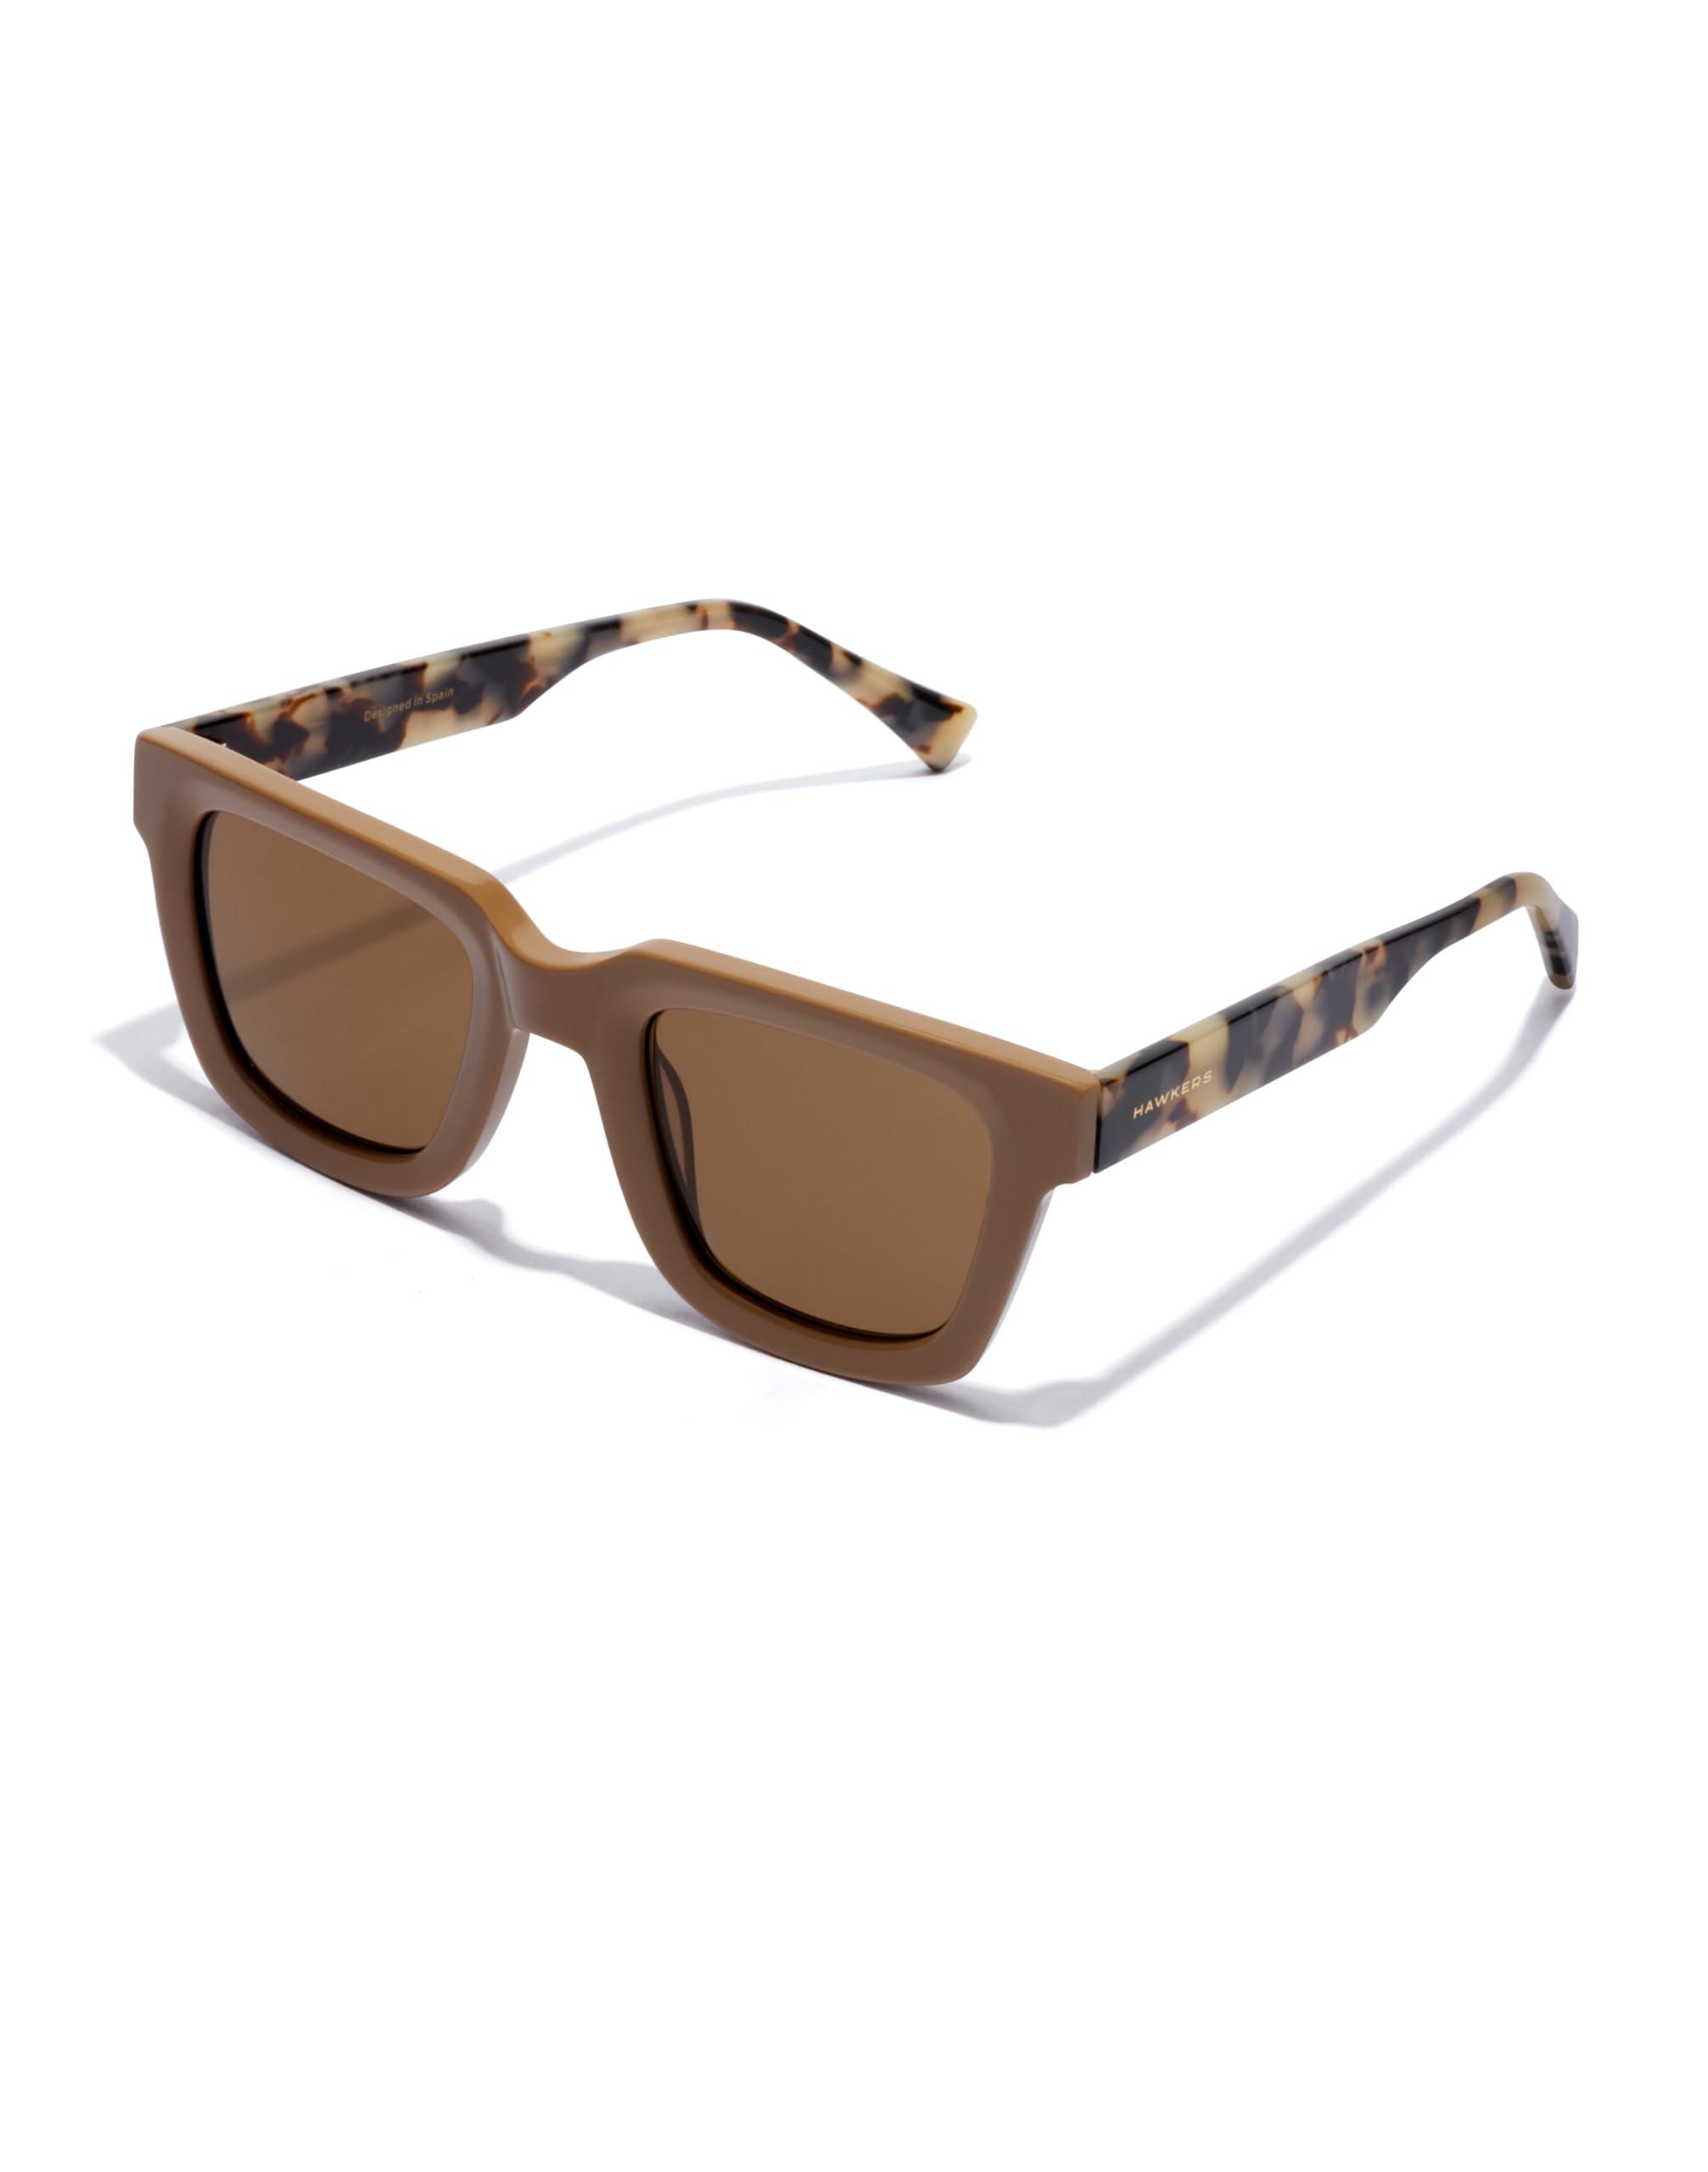 Gafas de sol HAWKERS Black Brown ONE DREAM para Hombre y Mujer, Unisex.  Protección UV400. Producto